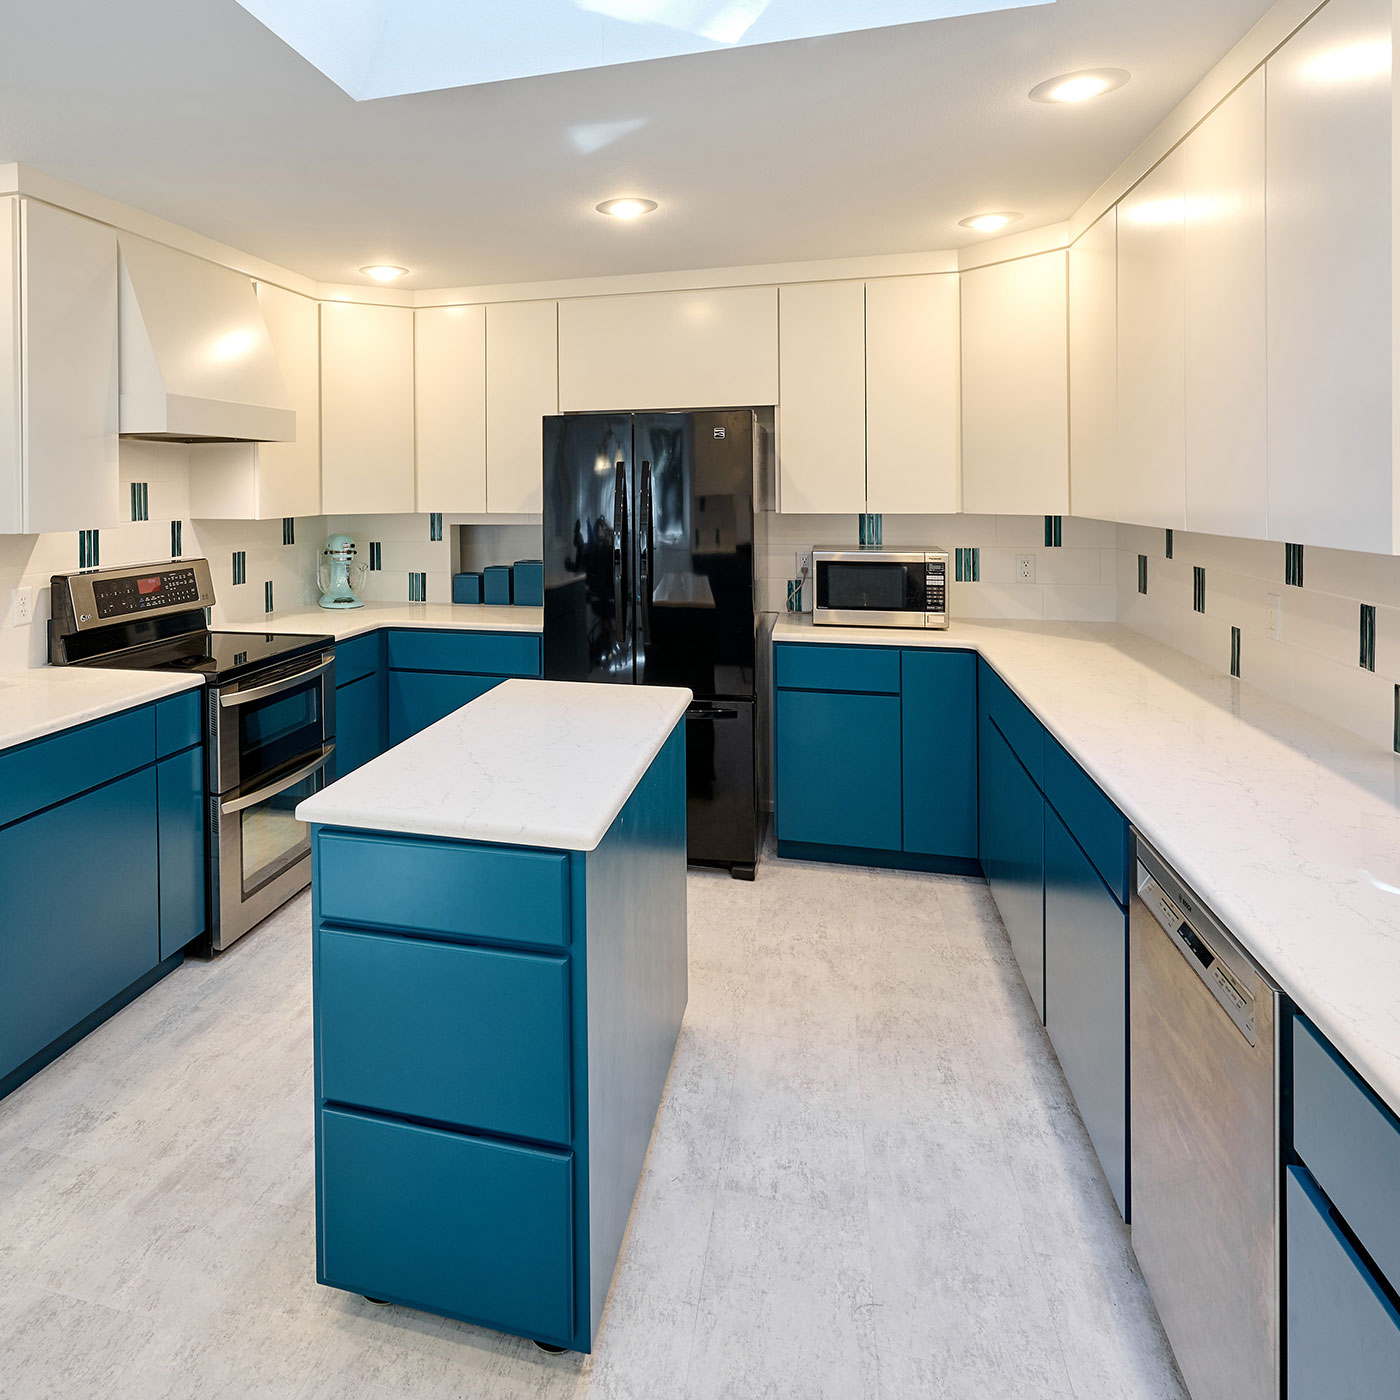 Kitchen Remodeling and custom cabinets, Corvallis, OR. Henderer Design + Build + Remodel